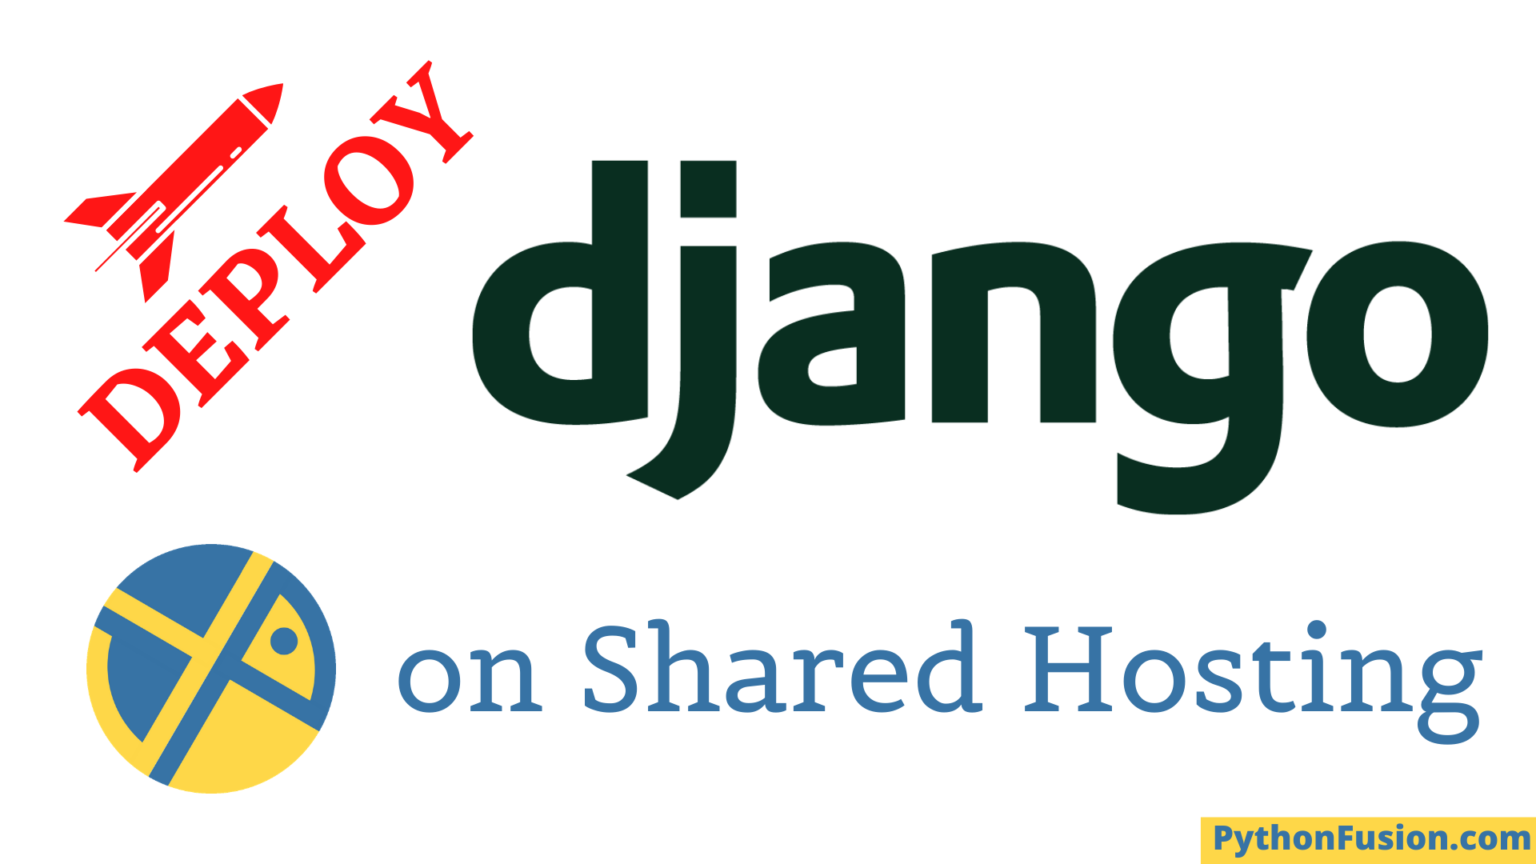 Django hosts. Бесплатный хостинг для Django. Django Shell Plus. Django сайт 2023.